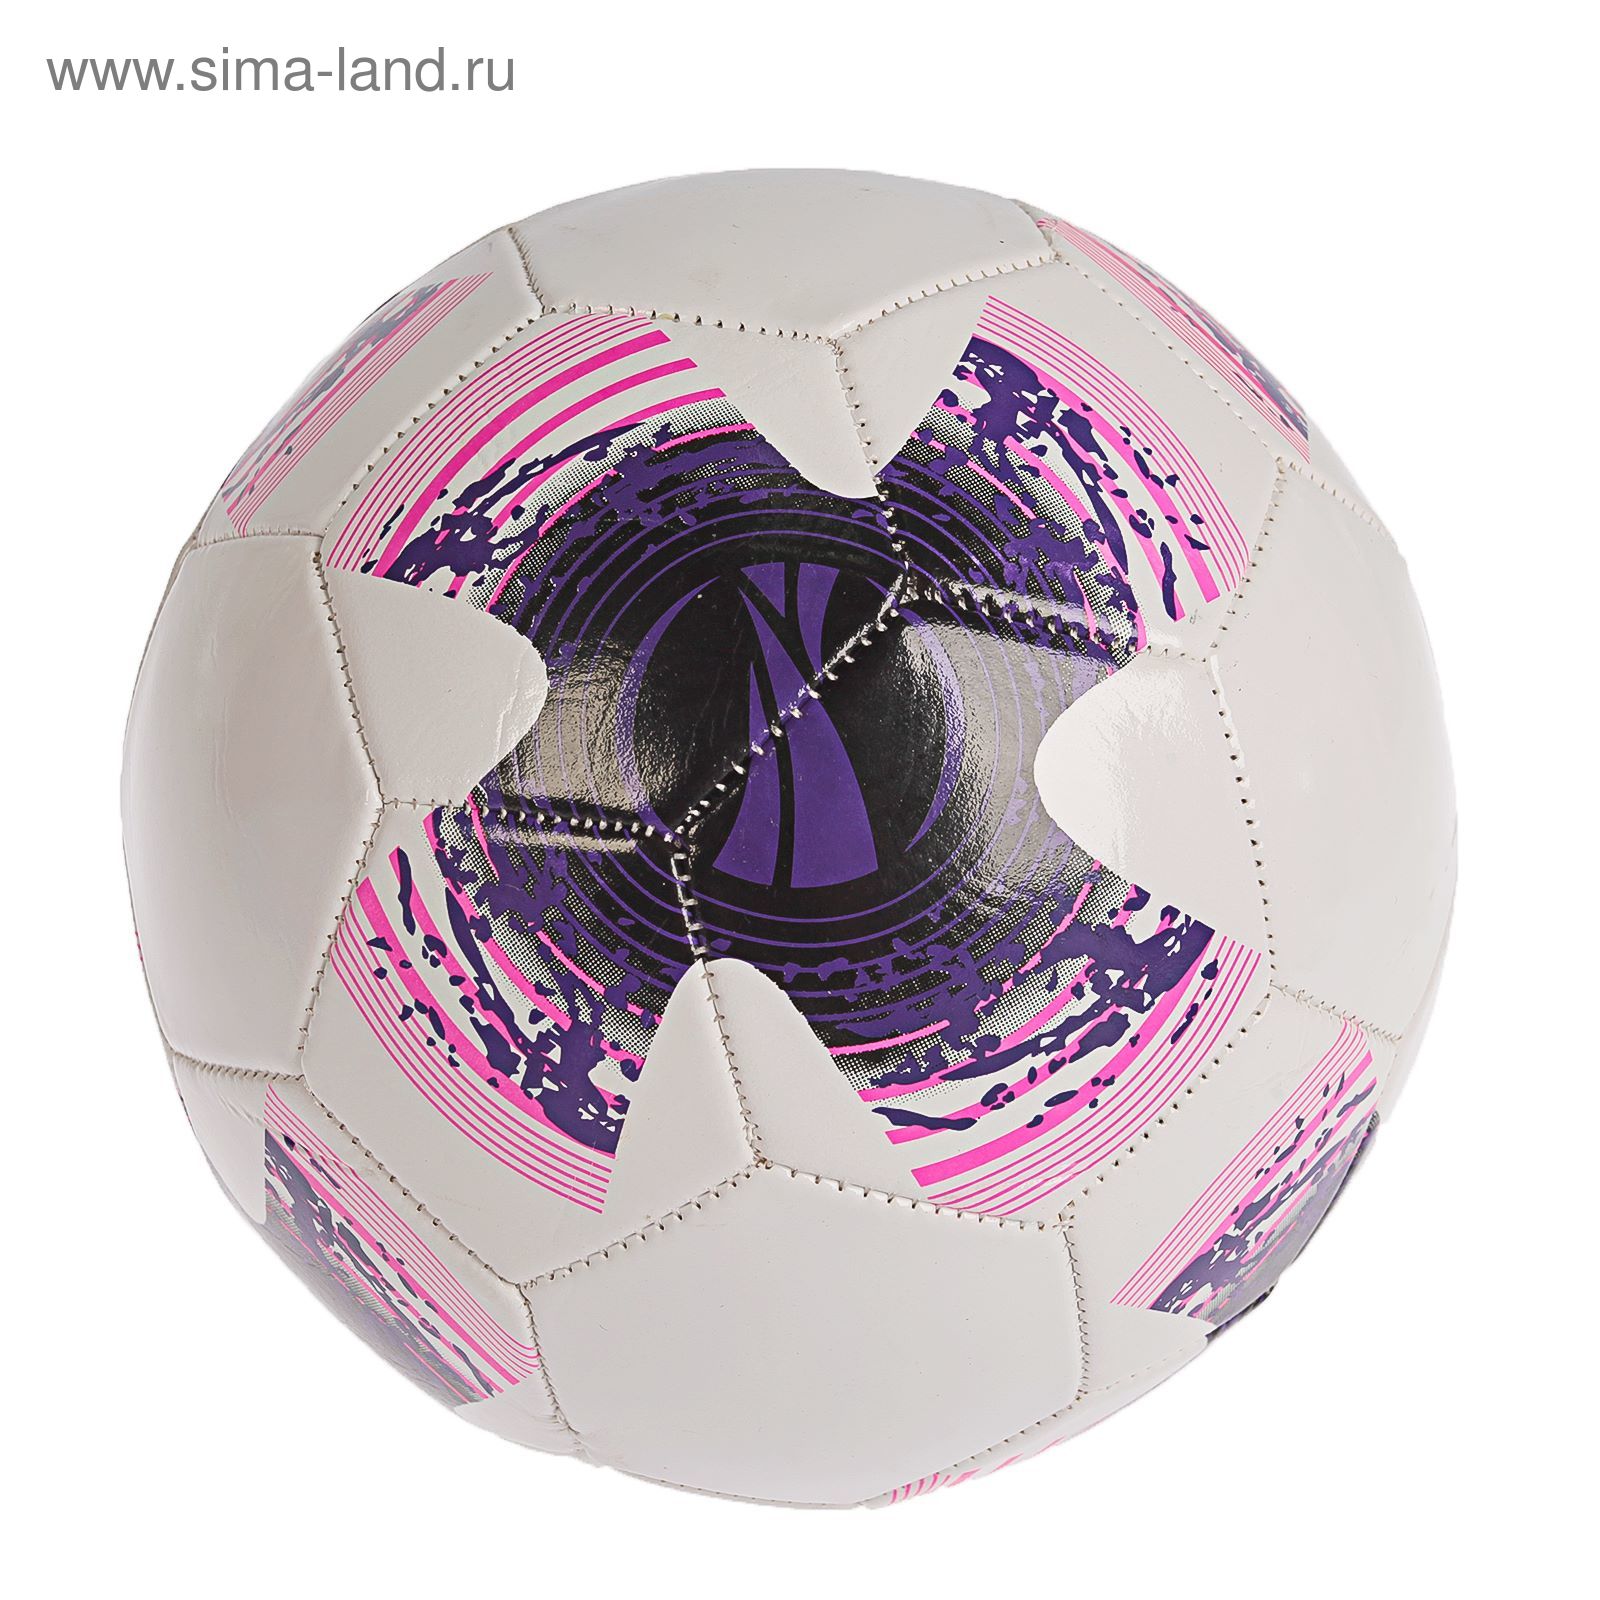 Мяч футбольный р.5, 32 панели, маш.сшивка 260 гр, цвет бело-фиолетовый